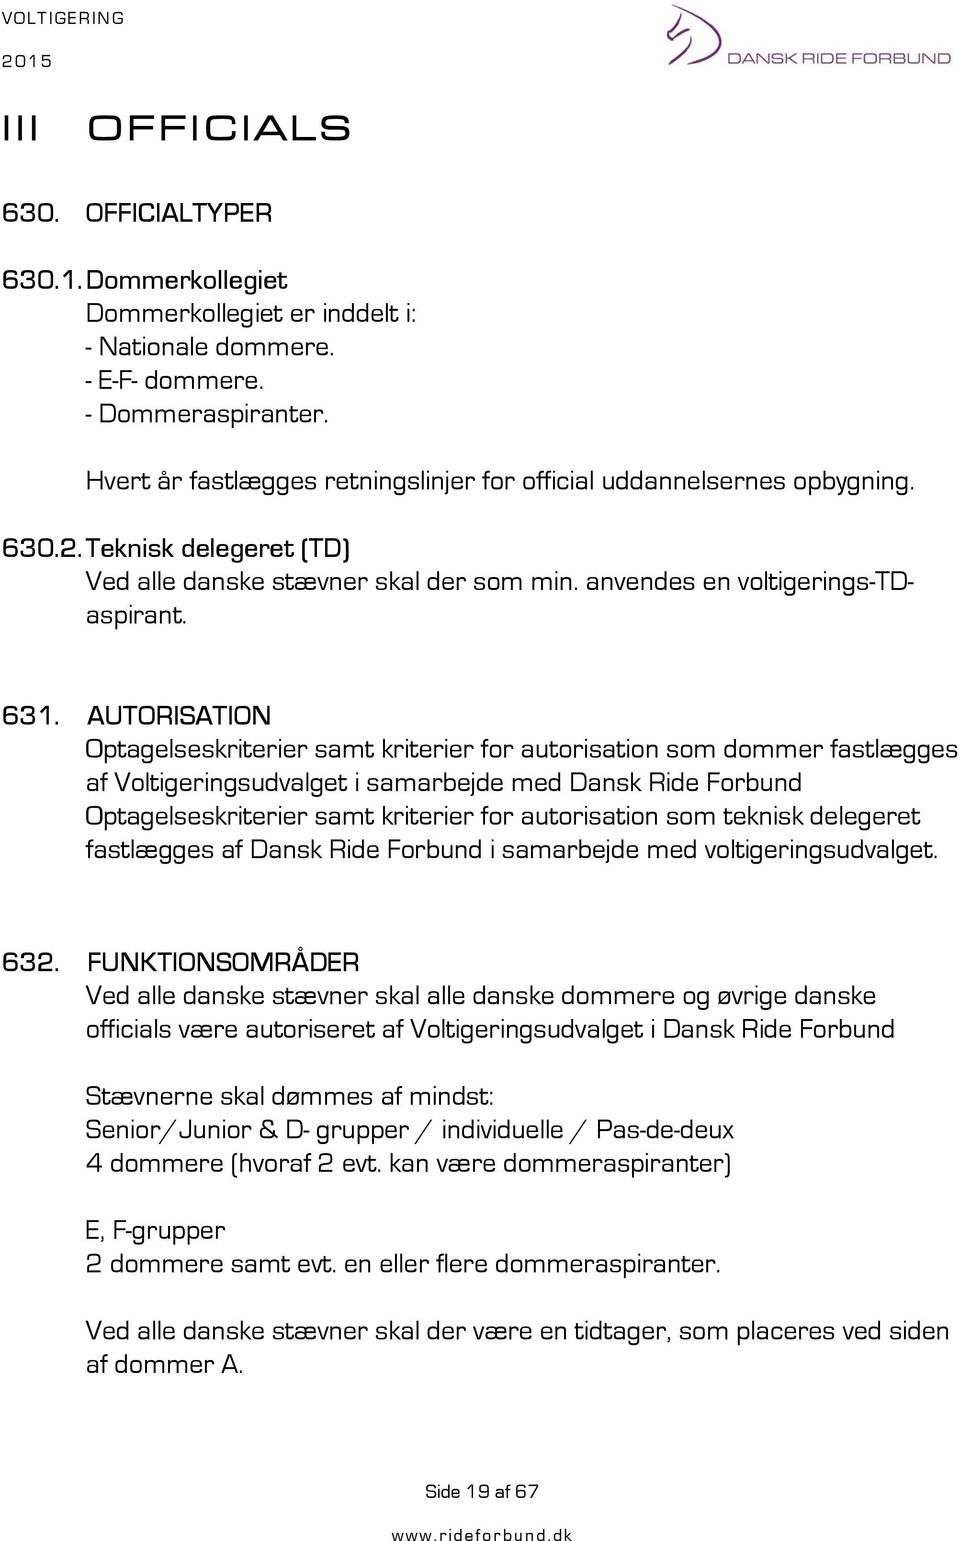 AUTORISATION Optagelseskriterier samt kriterier for autorisation som dommer fastlægges af Voltigeringsudvalget i samarbejde med Dansk Ride Forbund Optagelseskriterier samt kriterier for autorisation